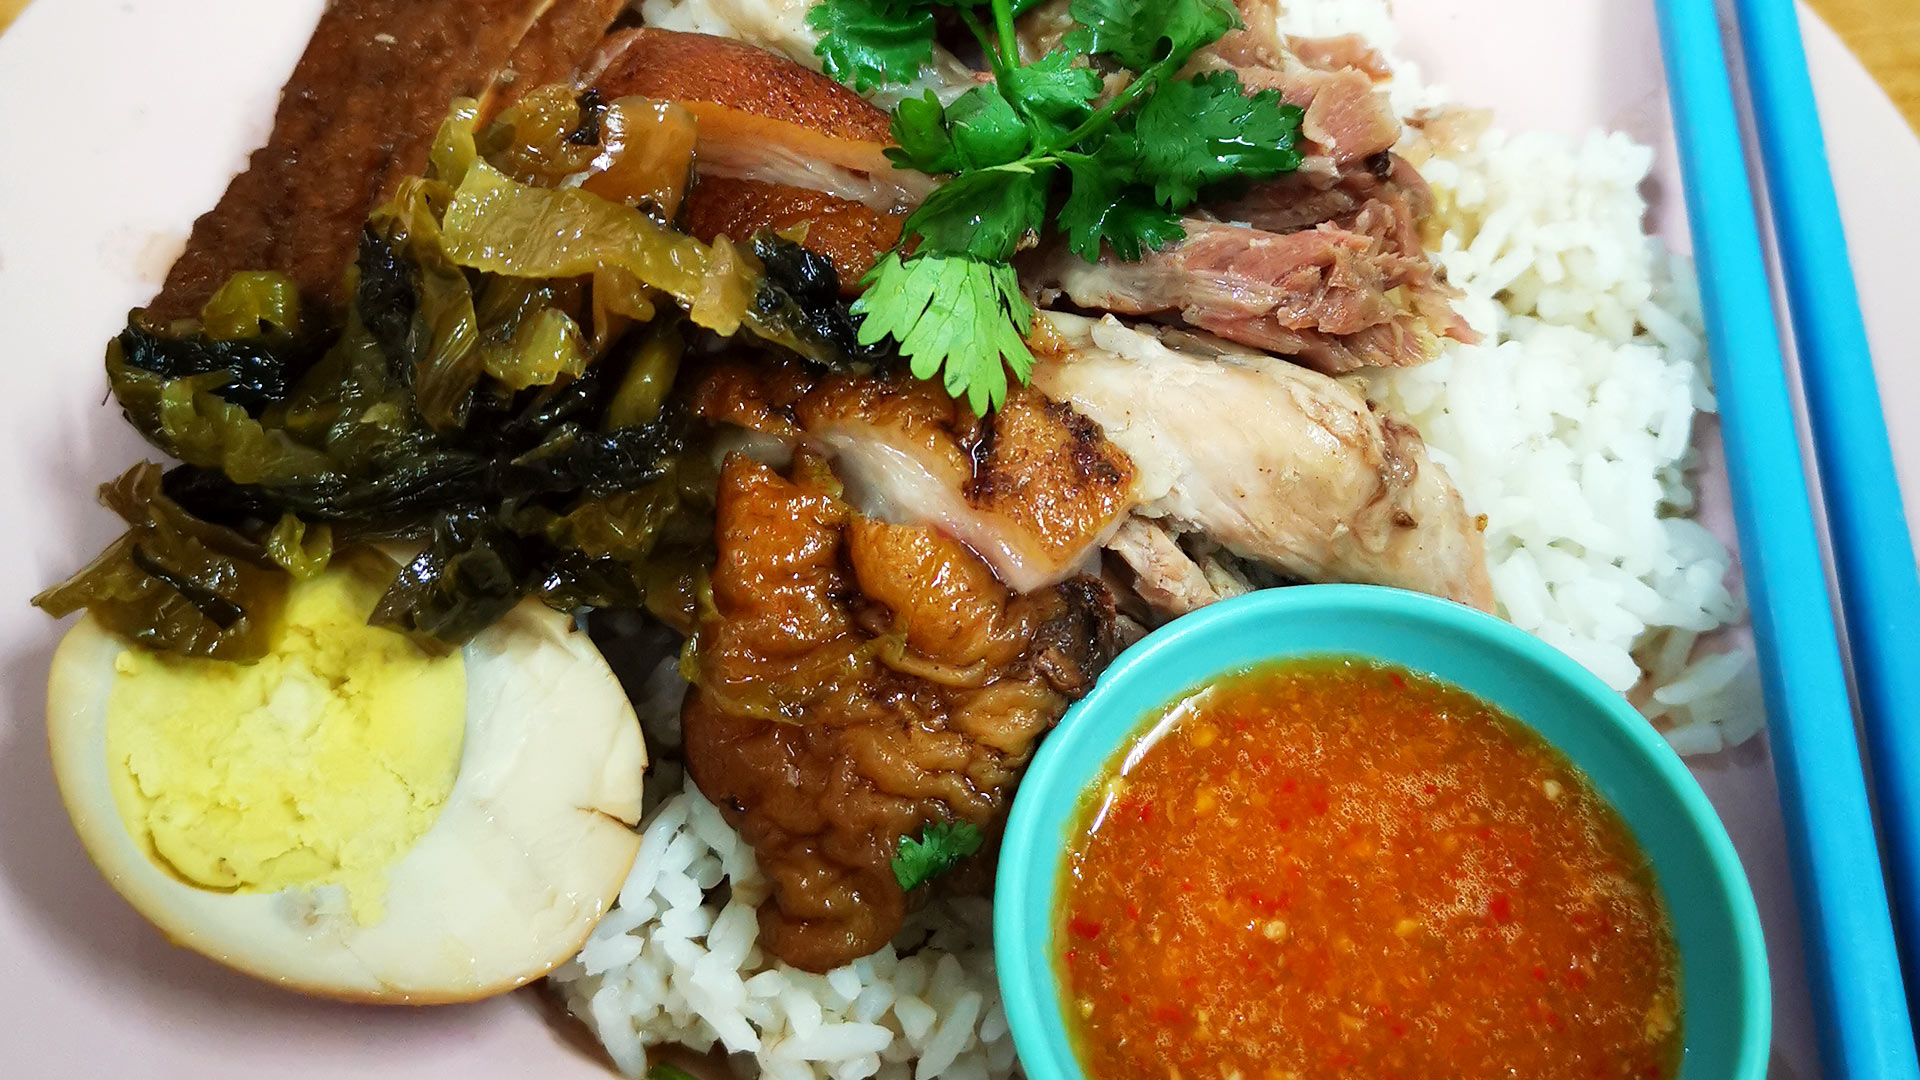 「泰式猪脚飯」（英語 Thai pork leg rice：タイ式ポークレッグライス) (タイ語ข้าวขาหมู Kau ka moo: カオカームー) こと「とんそく煮込みごはん」